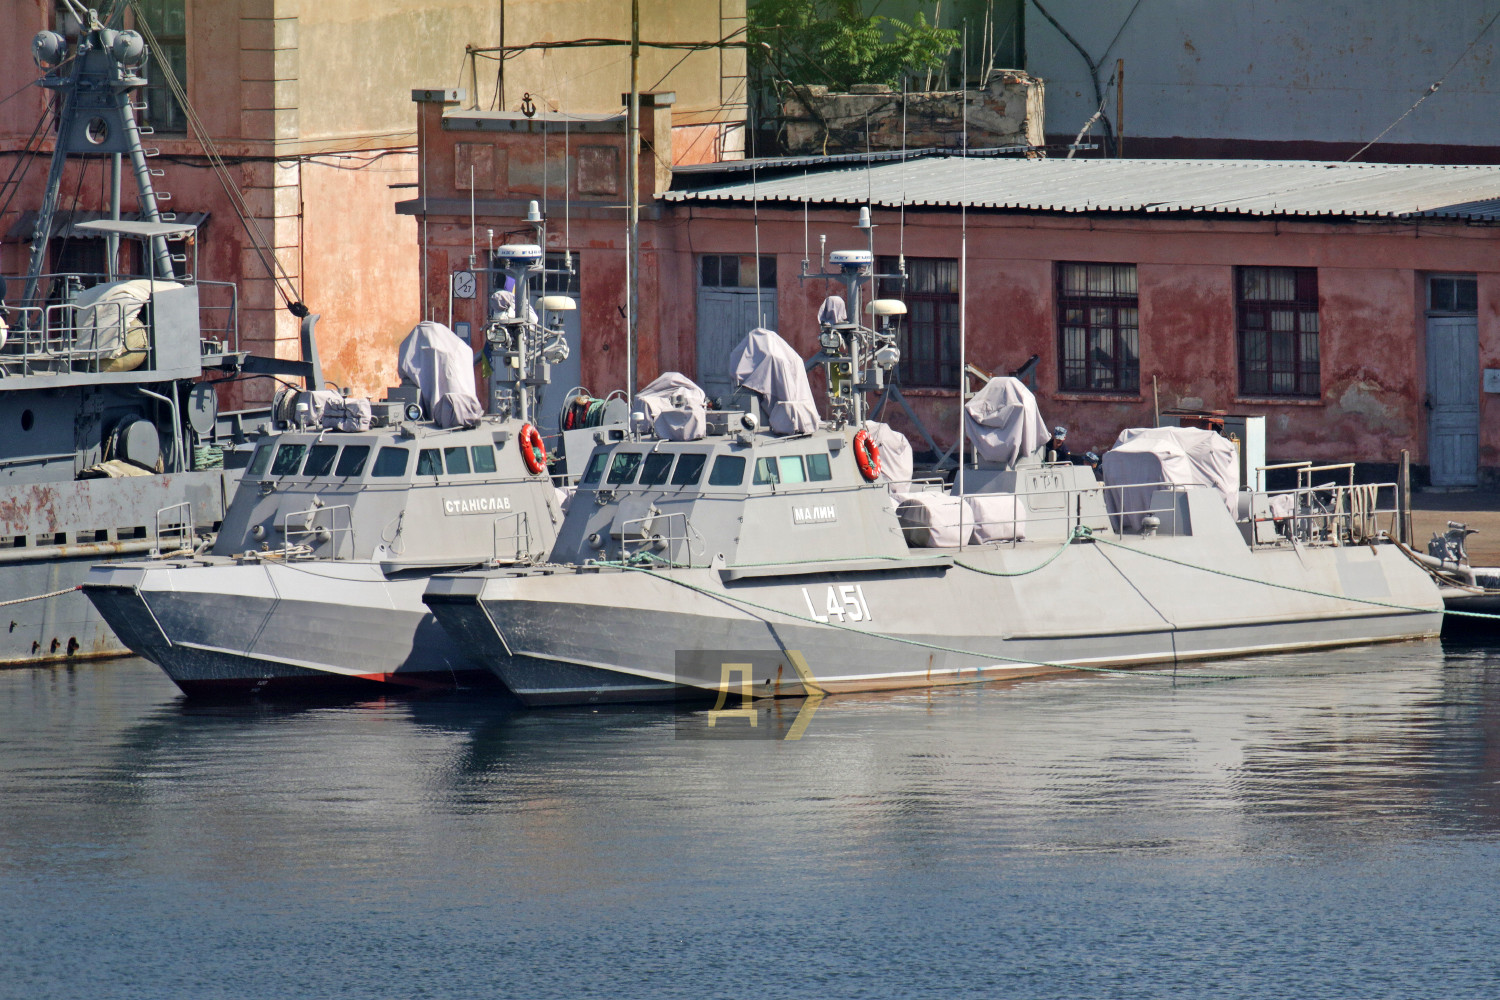 В Одессе ремонтируют катера Кентавр – три года их не могут принять в состав боевого флота